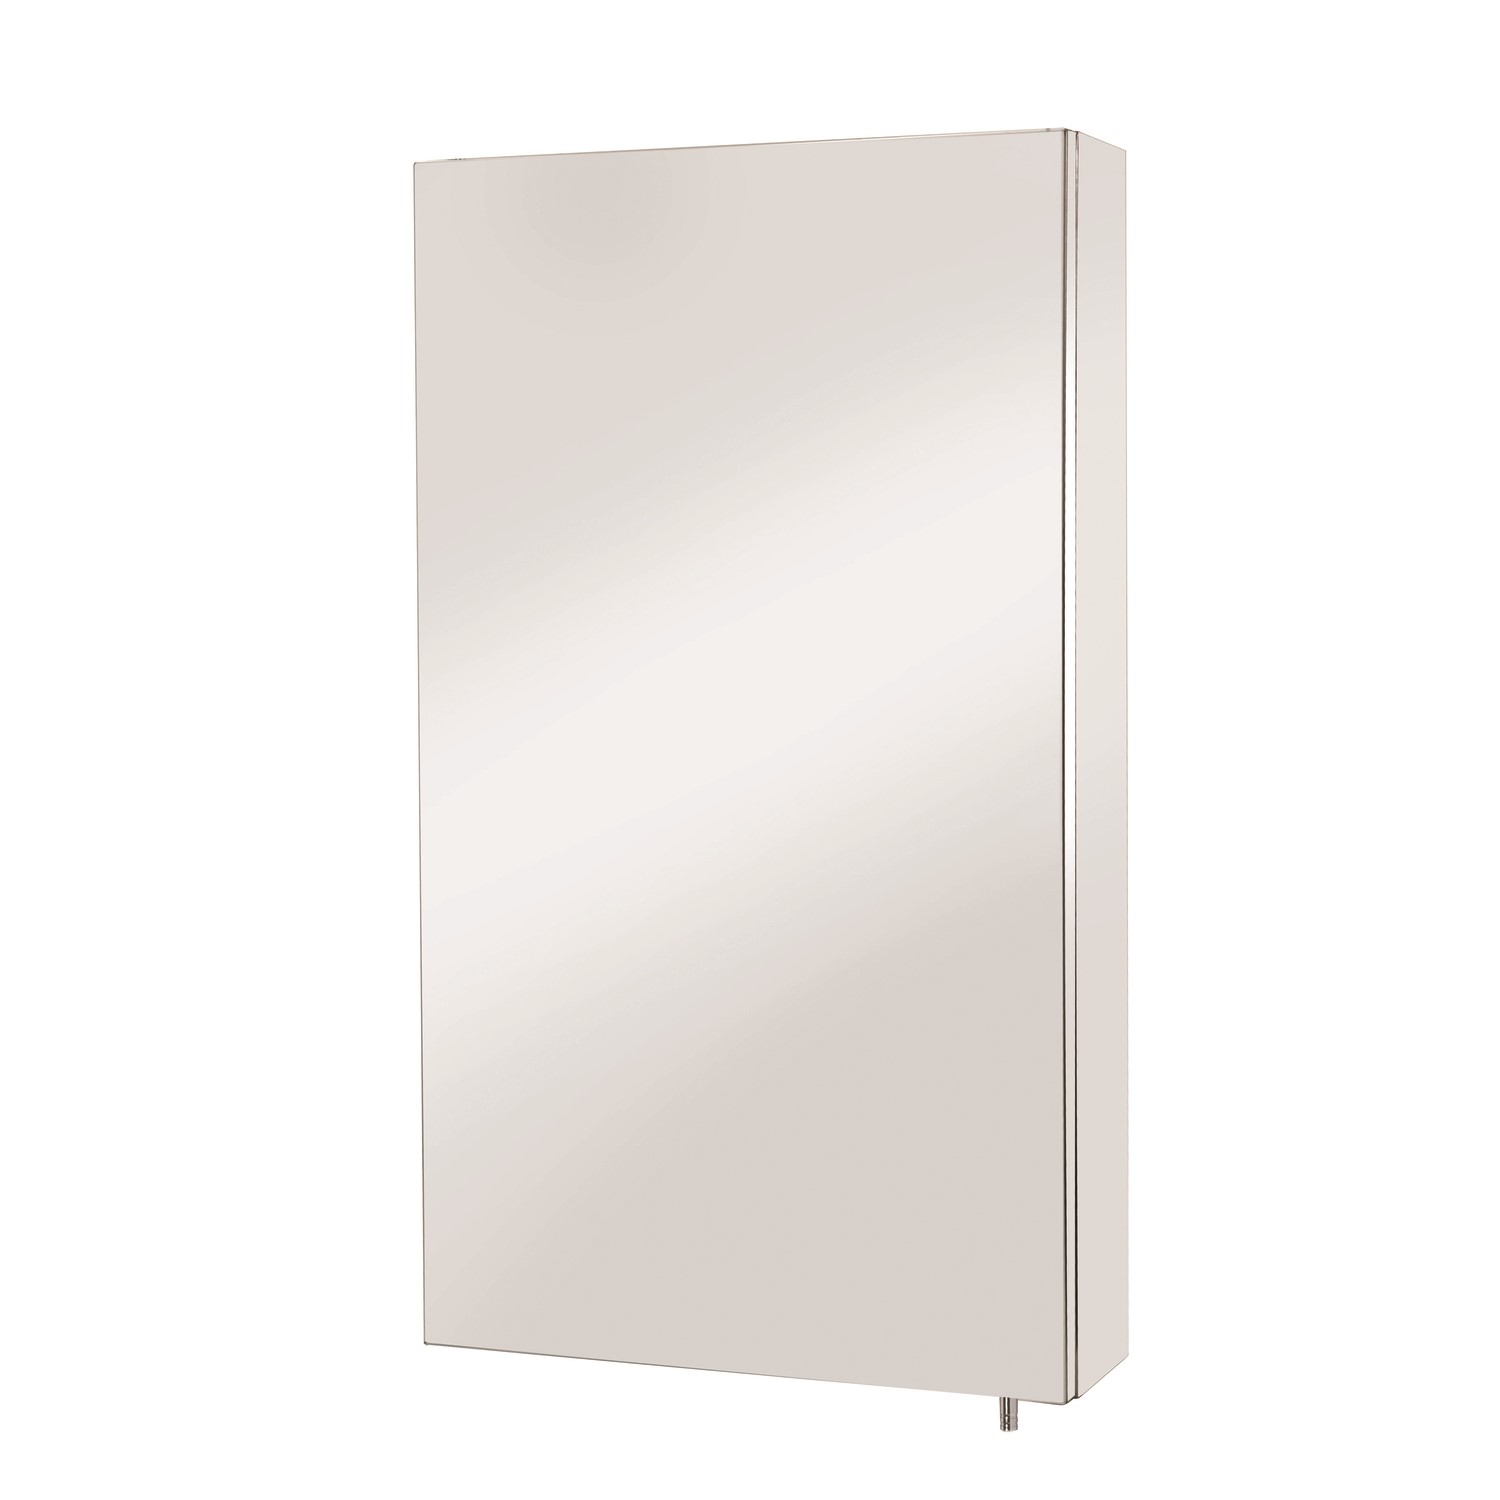 Steel Mirrored Wall Bathroom Cabinet 300 x 550mm - Croydex